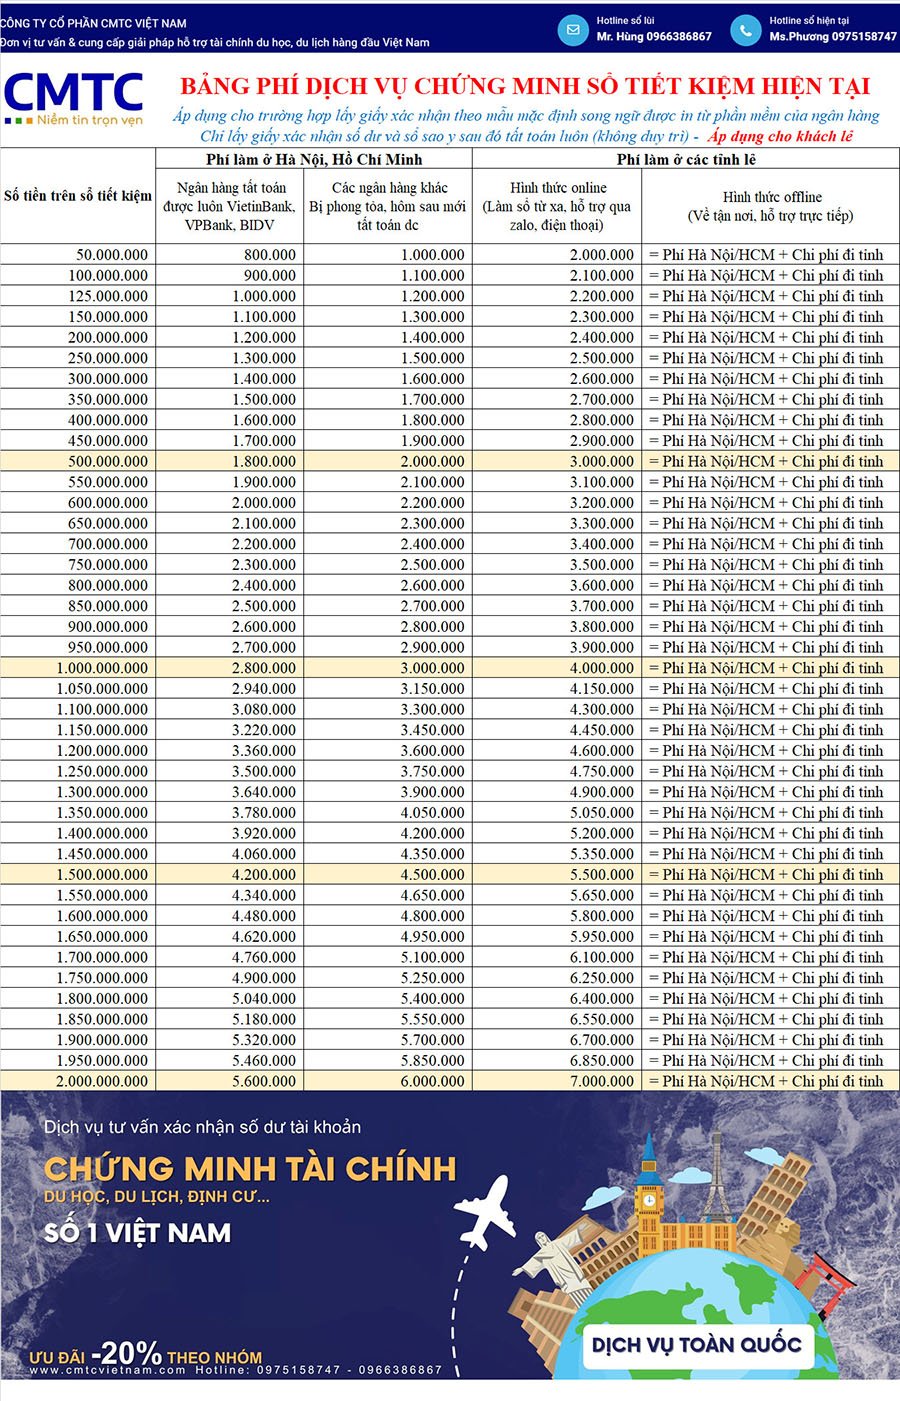 Bảng giá dịch vụ chứng minh tài chính tại An Giang